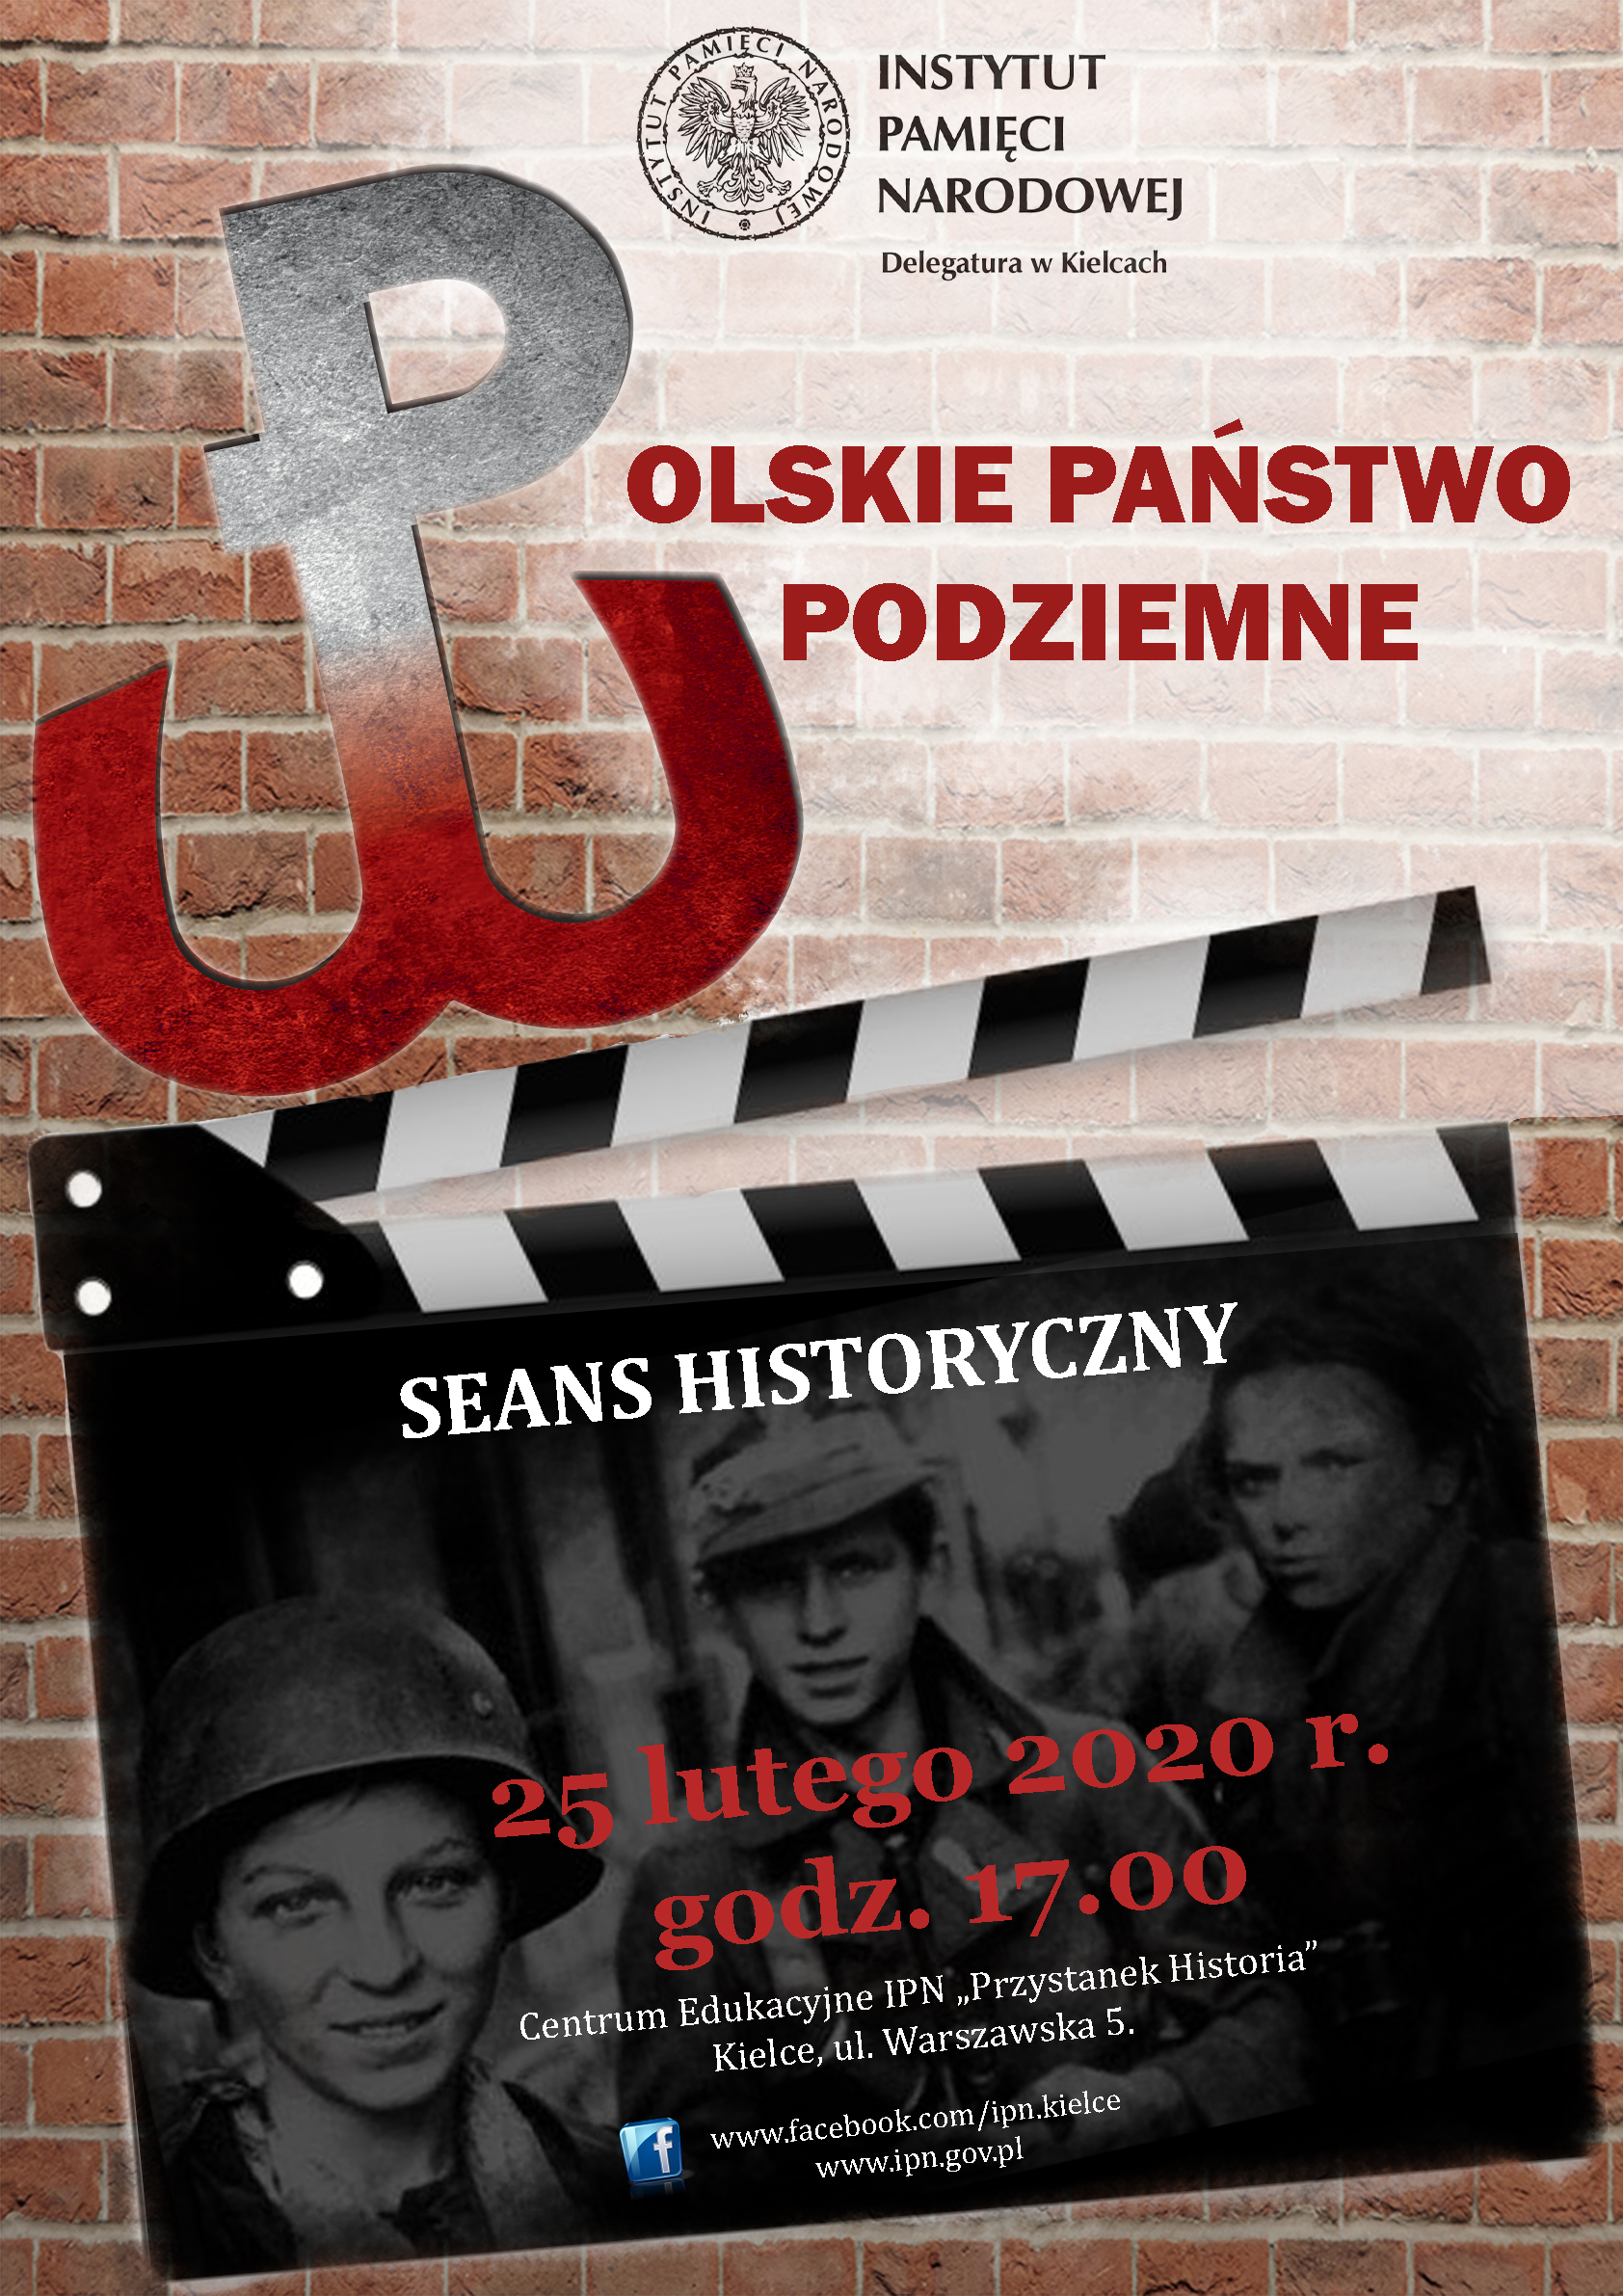 Seans historyczny: Polskie państwo Podziemne 1939 - 1945